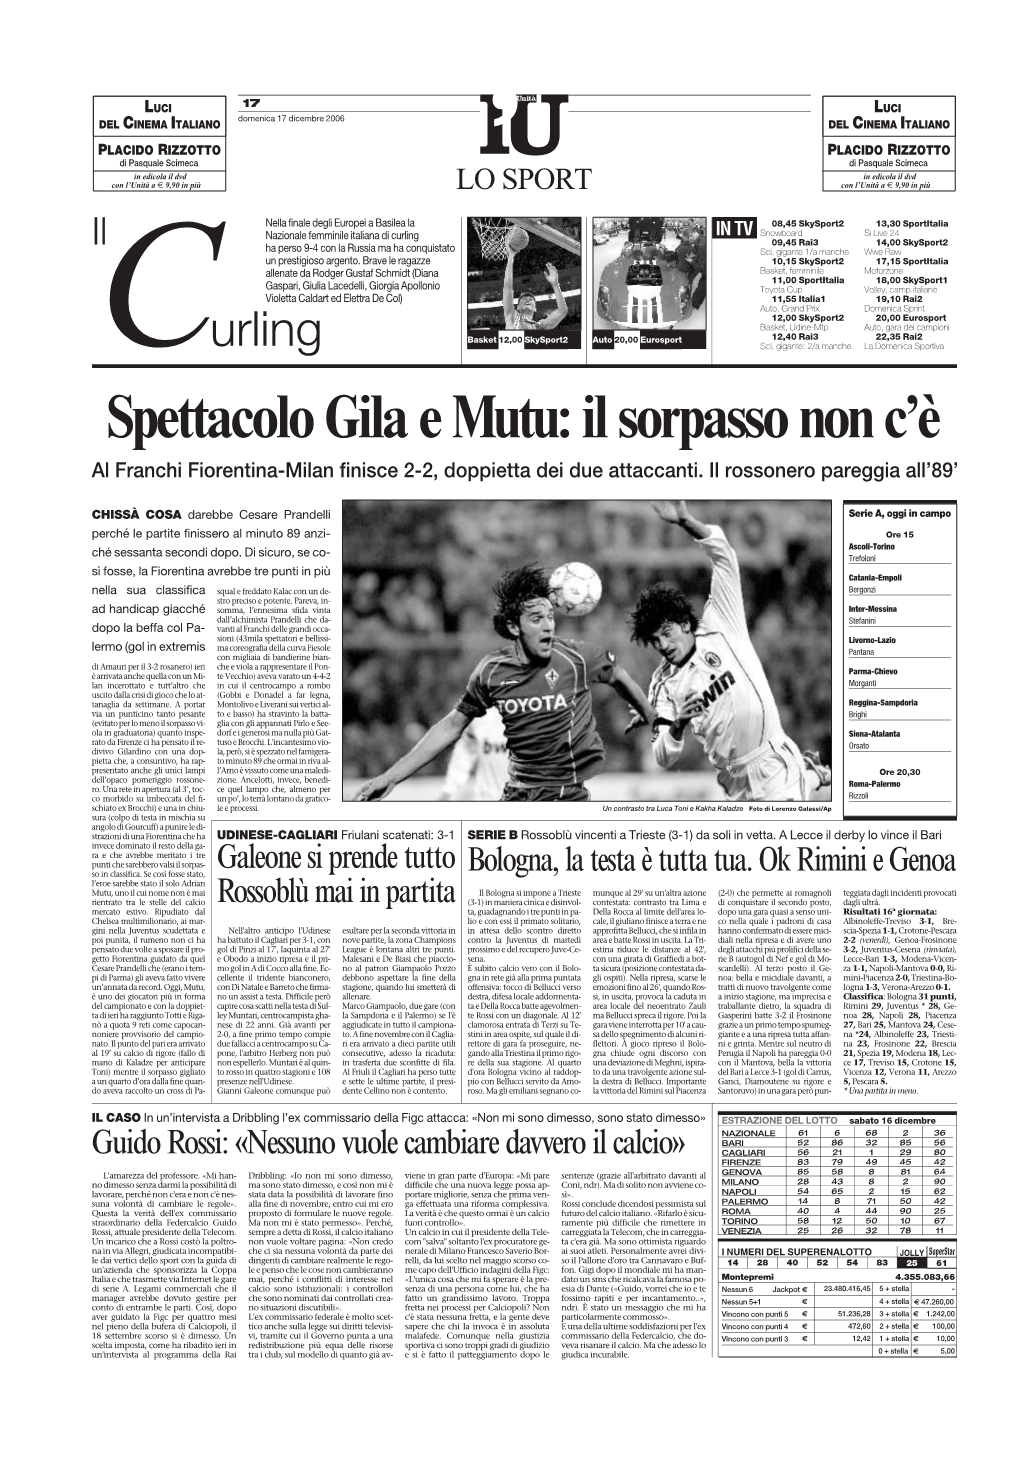 Spettacolo Gila E Mutu: Il Sorpasso Non C’È Al Franchi Fiorentina-Milan Finisce 2-2, Doppietta Dei Due Attaccanti